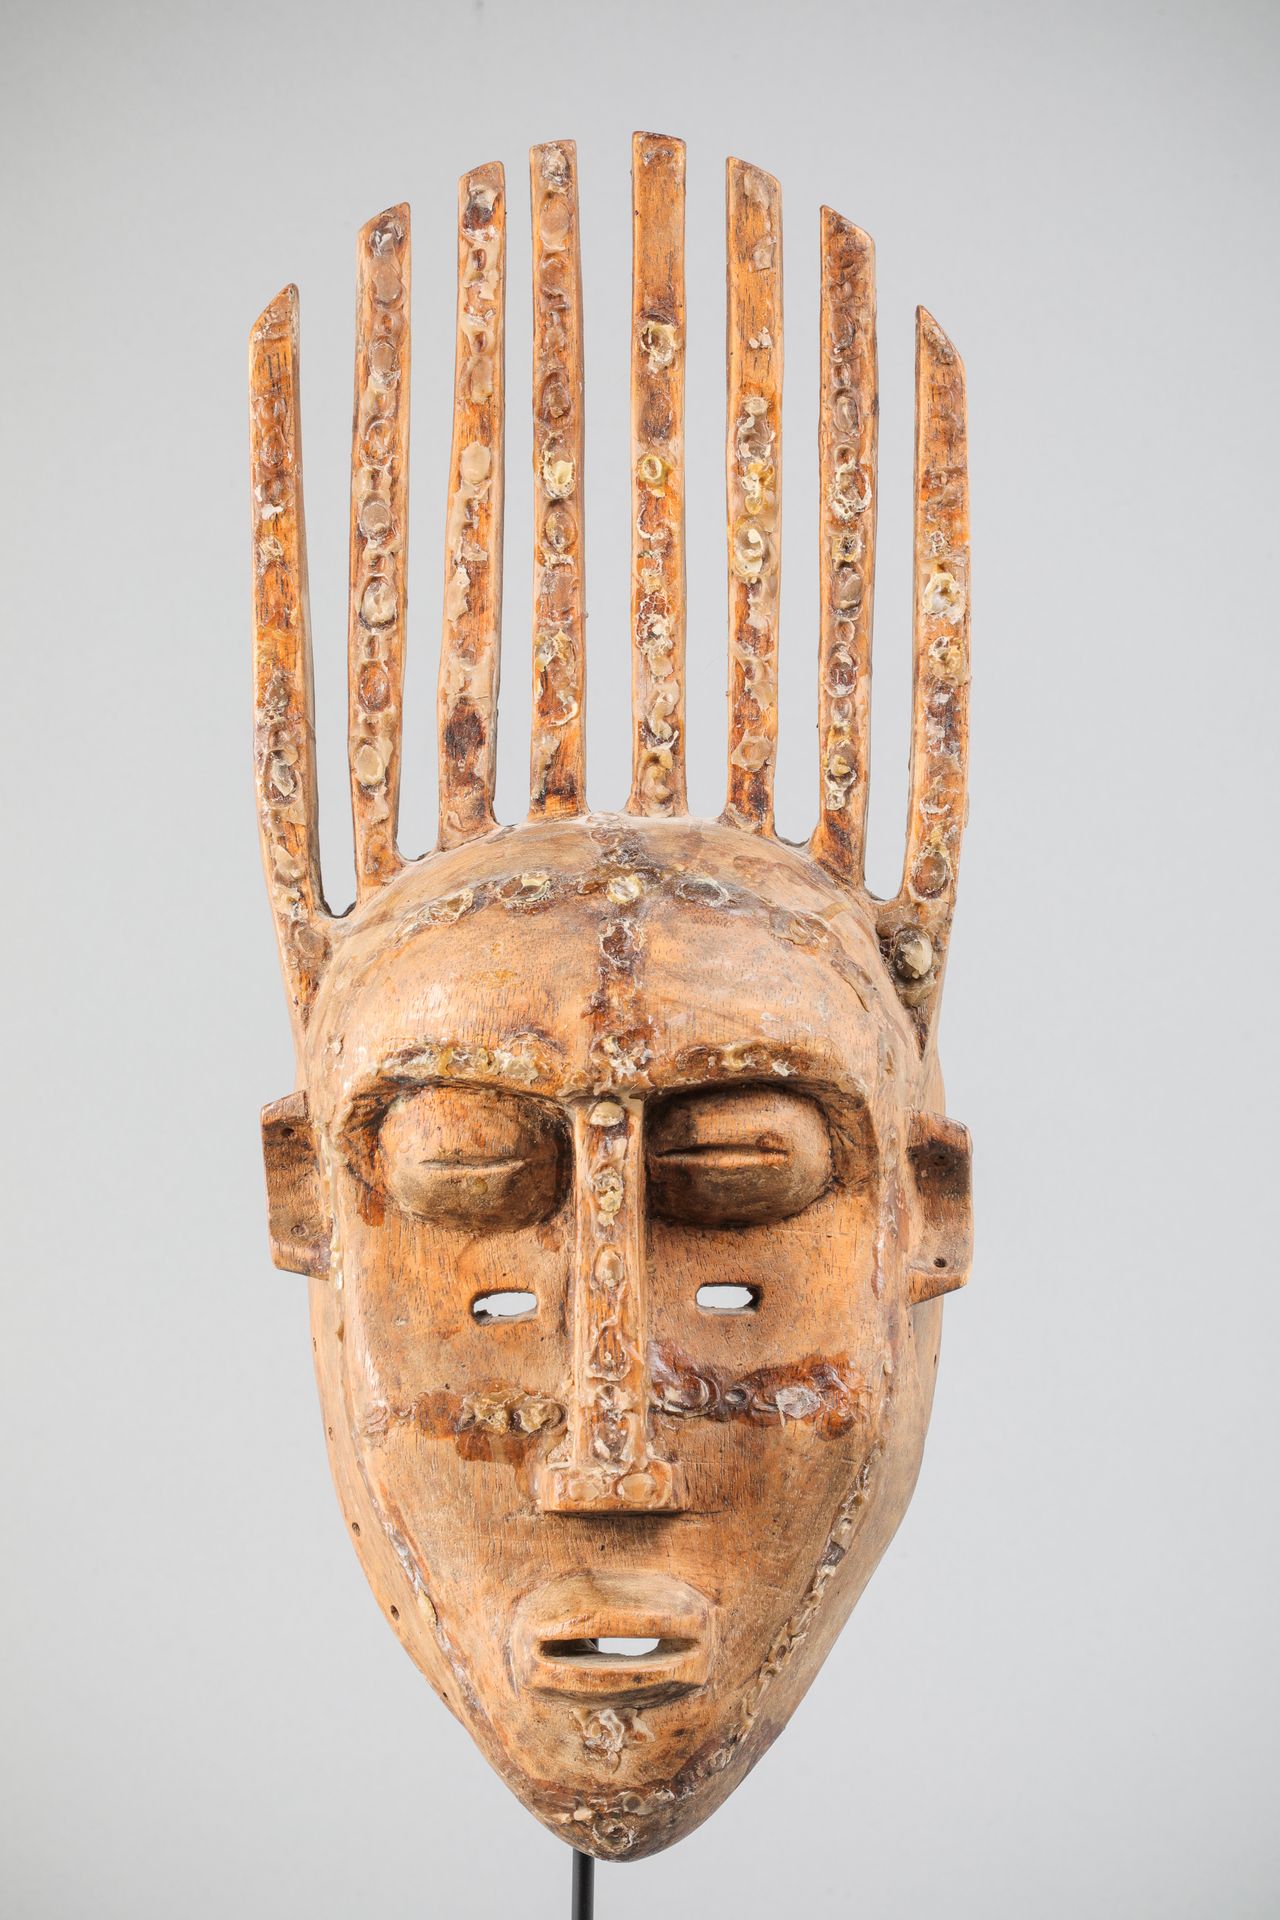 Null 班巴拉面具，马里。脸部被一排角覆盖。带有棕色铜锈的木材。高46厘米。